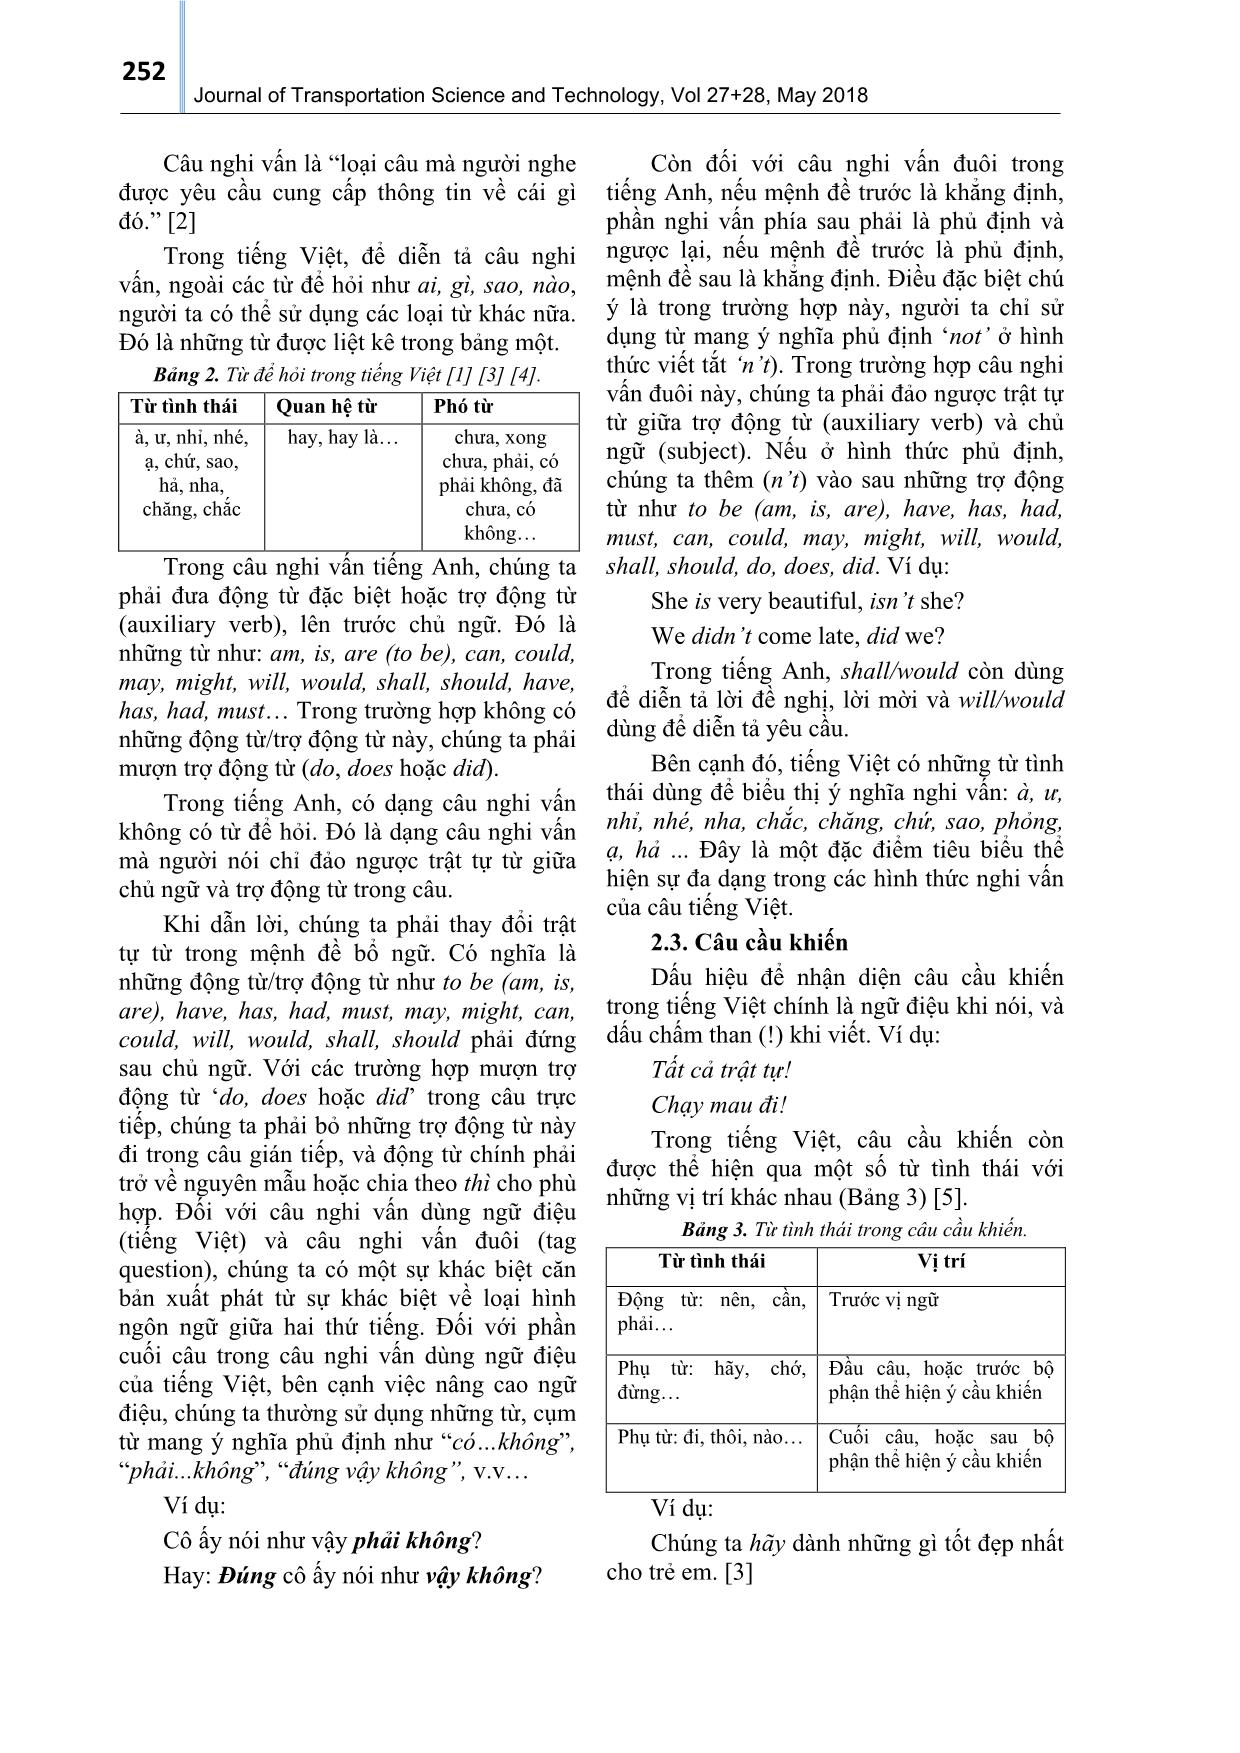 Những khác biệt cơ bản về cấu trúc câu trong tiếng Việt và tiếng Anh trang 3